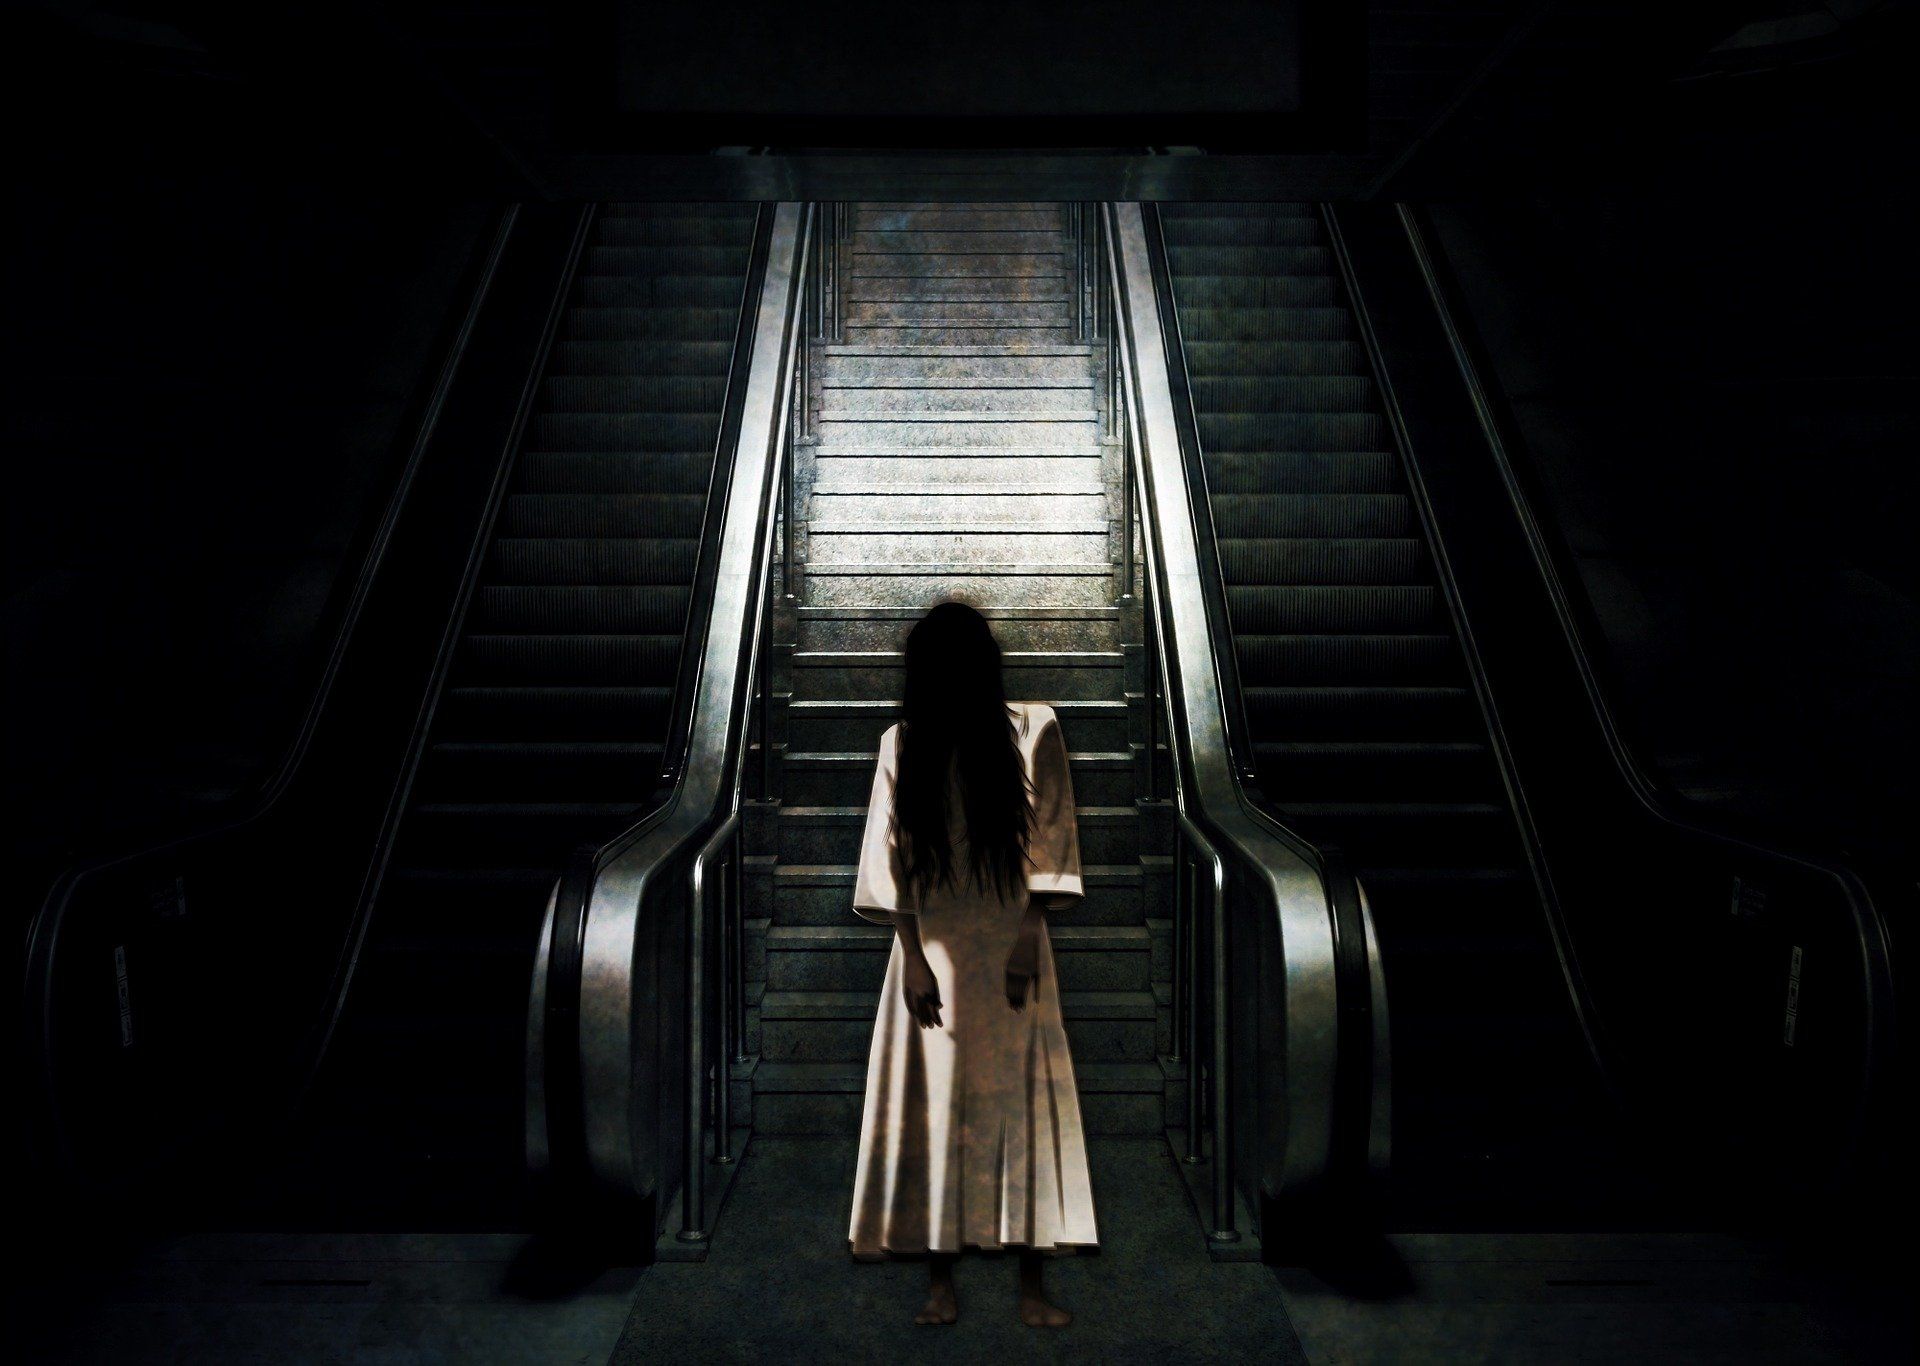 London bizonyos metró államásait szellemek látogatják